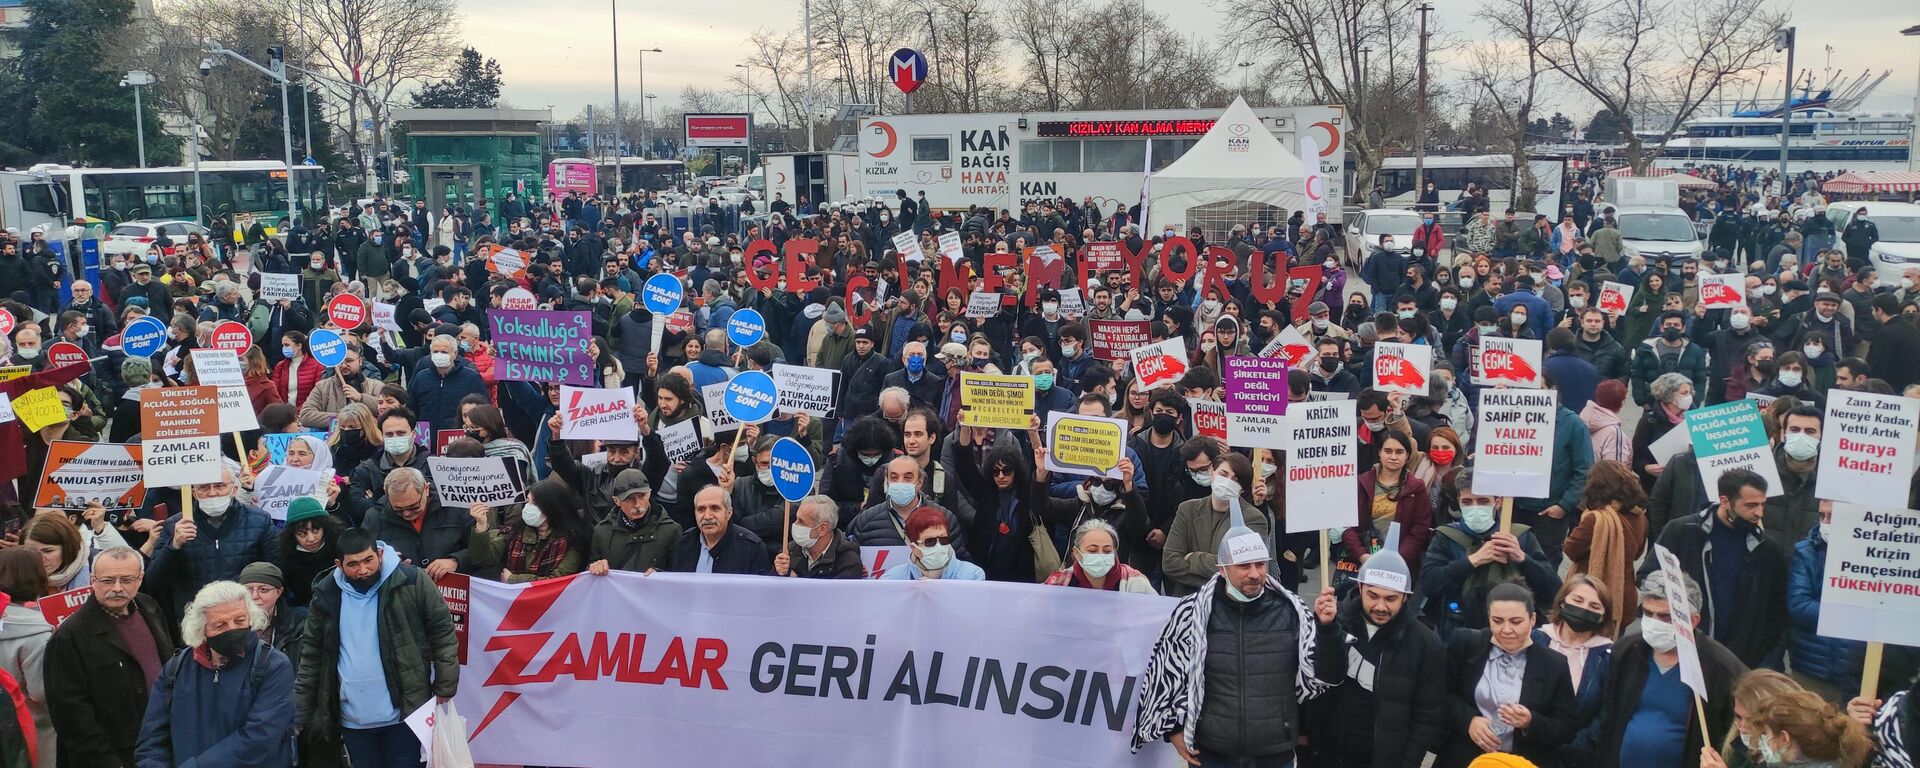 İstanbul’da ‘zamlar geri alınsın’ protestosu: ‘İnsanca yaşamak istiyoruz’ - Sputnik Türkiye, 1920, 24.05.2022